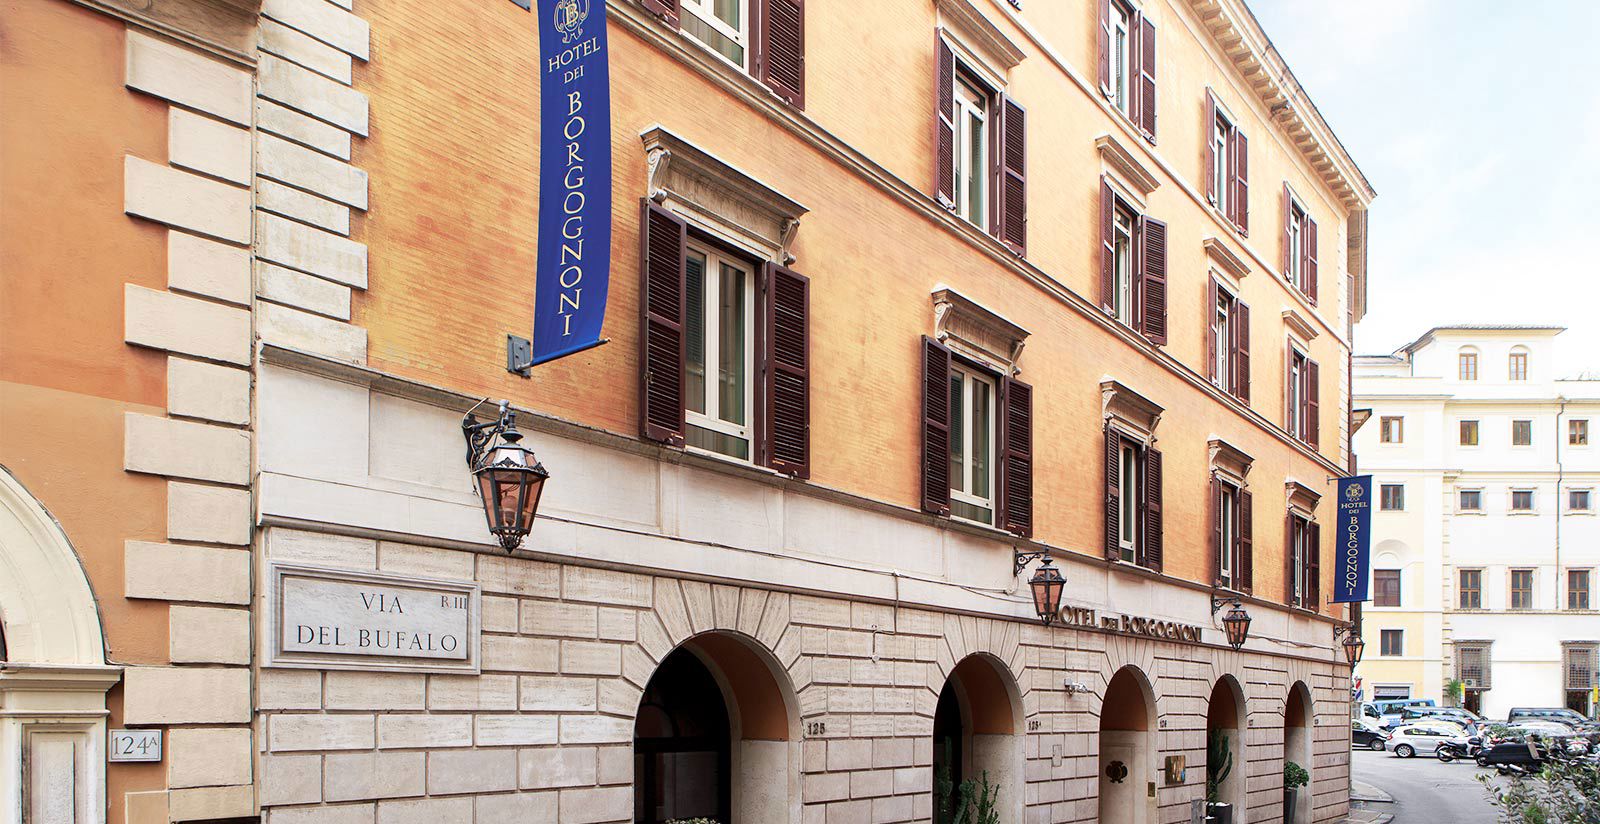 Hotel Borgognoni: La location ideale per i tuoi meeting nel centro di Roma 5